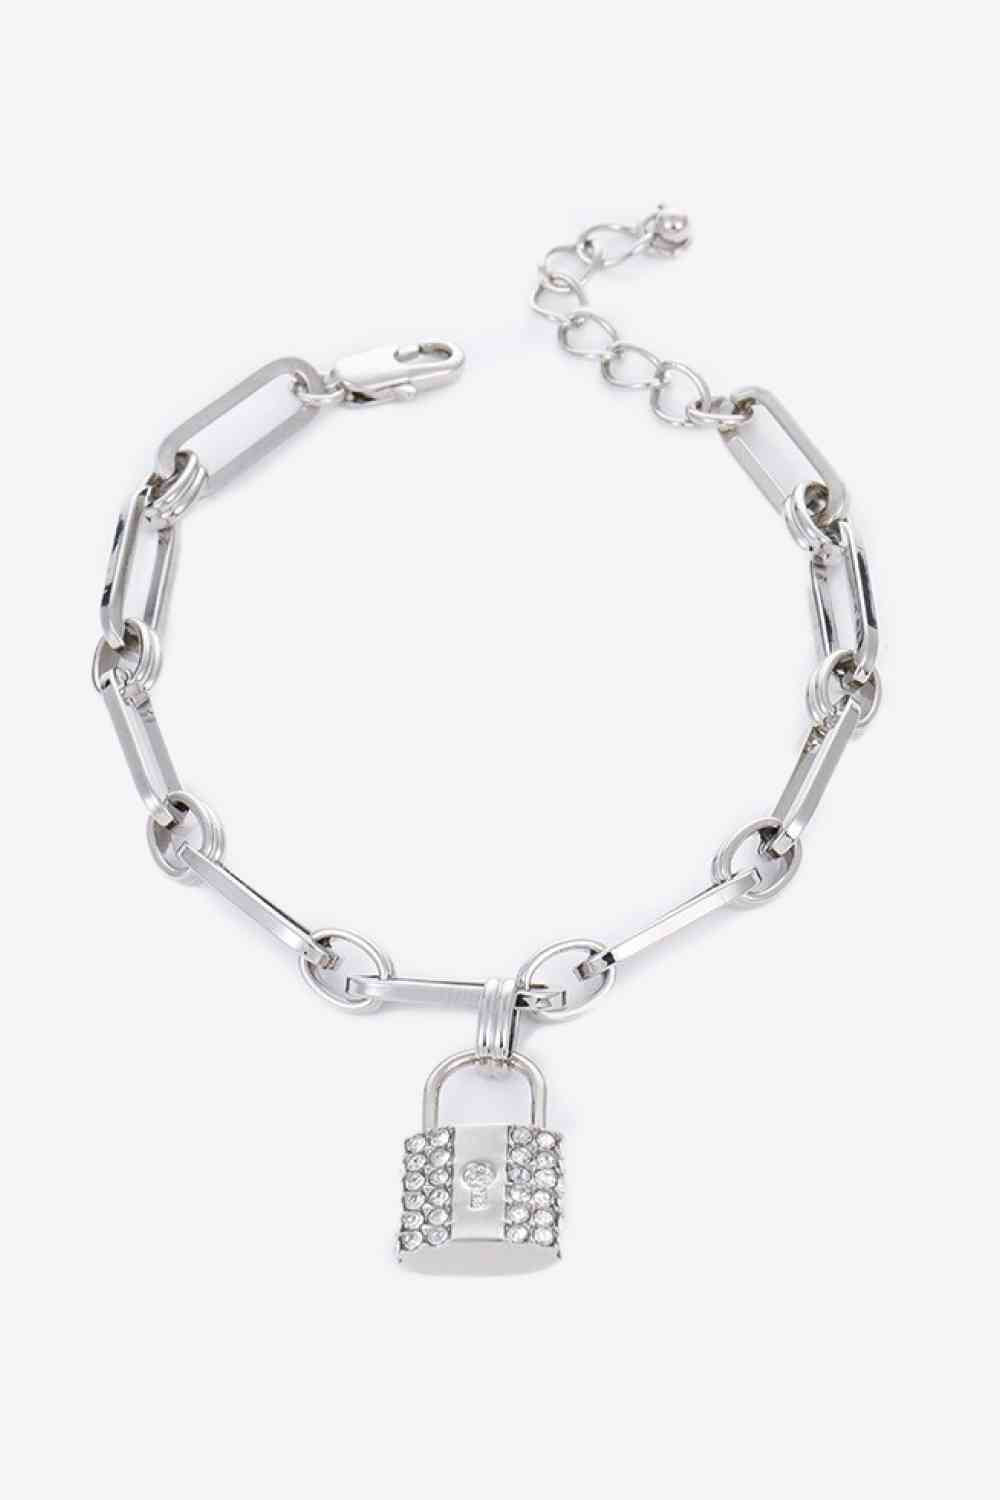 5-Piece Wholesale Lock Charm Chain Bracelet - Bracelets - FITGGINS